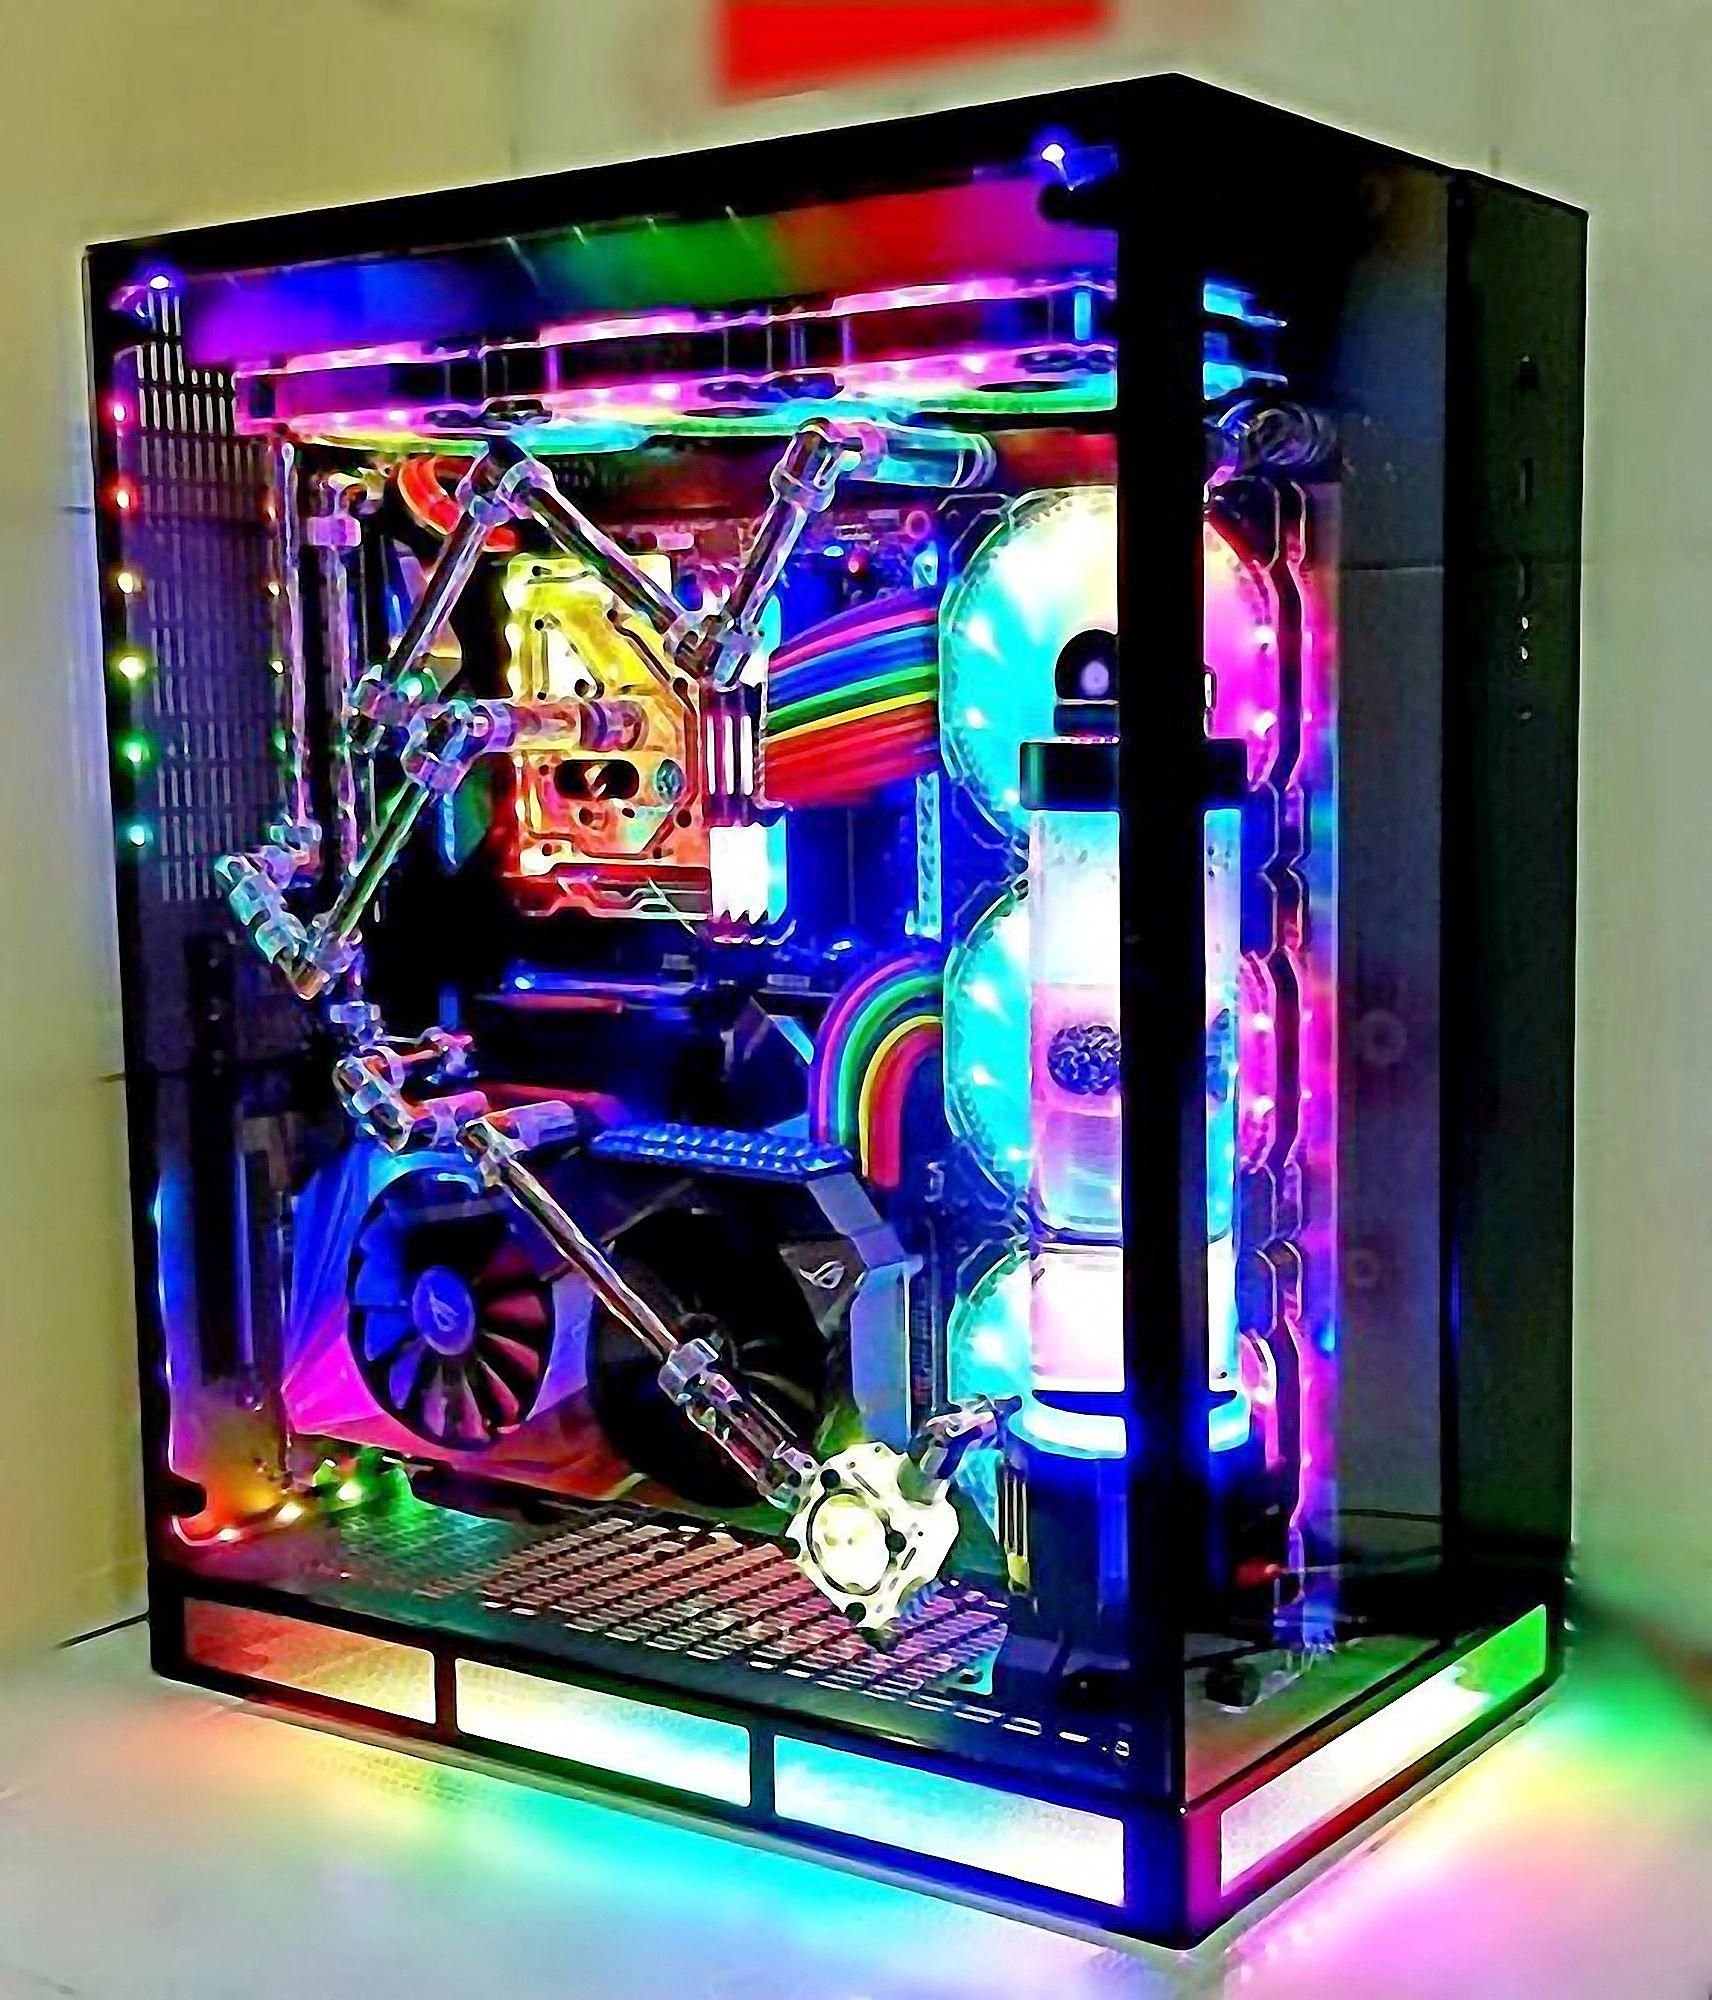 Пк colorful. Игровой ПК С РГБ подсветкой. Необычные компьютерные корпуса. Компьютер с подсветкой игровой. Моддинг компьютерного корпуса.